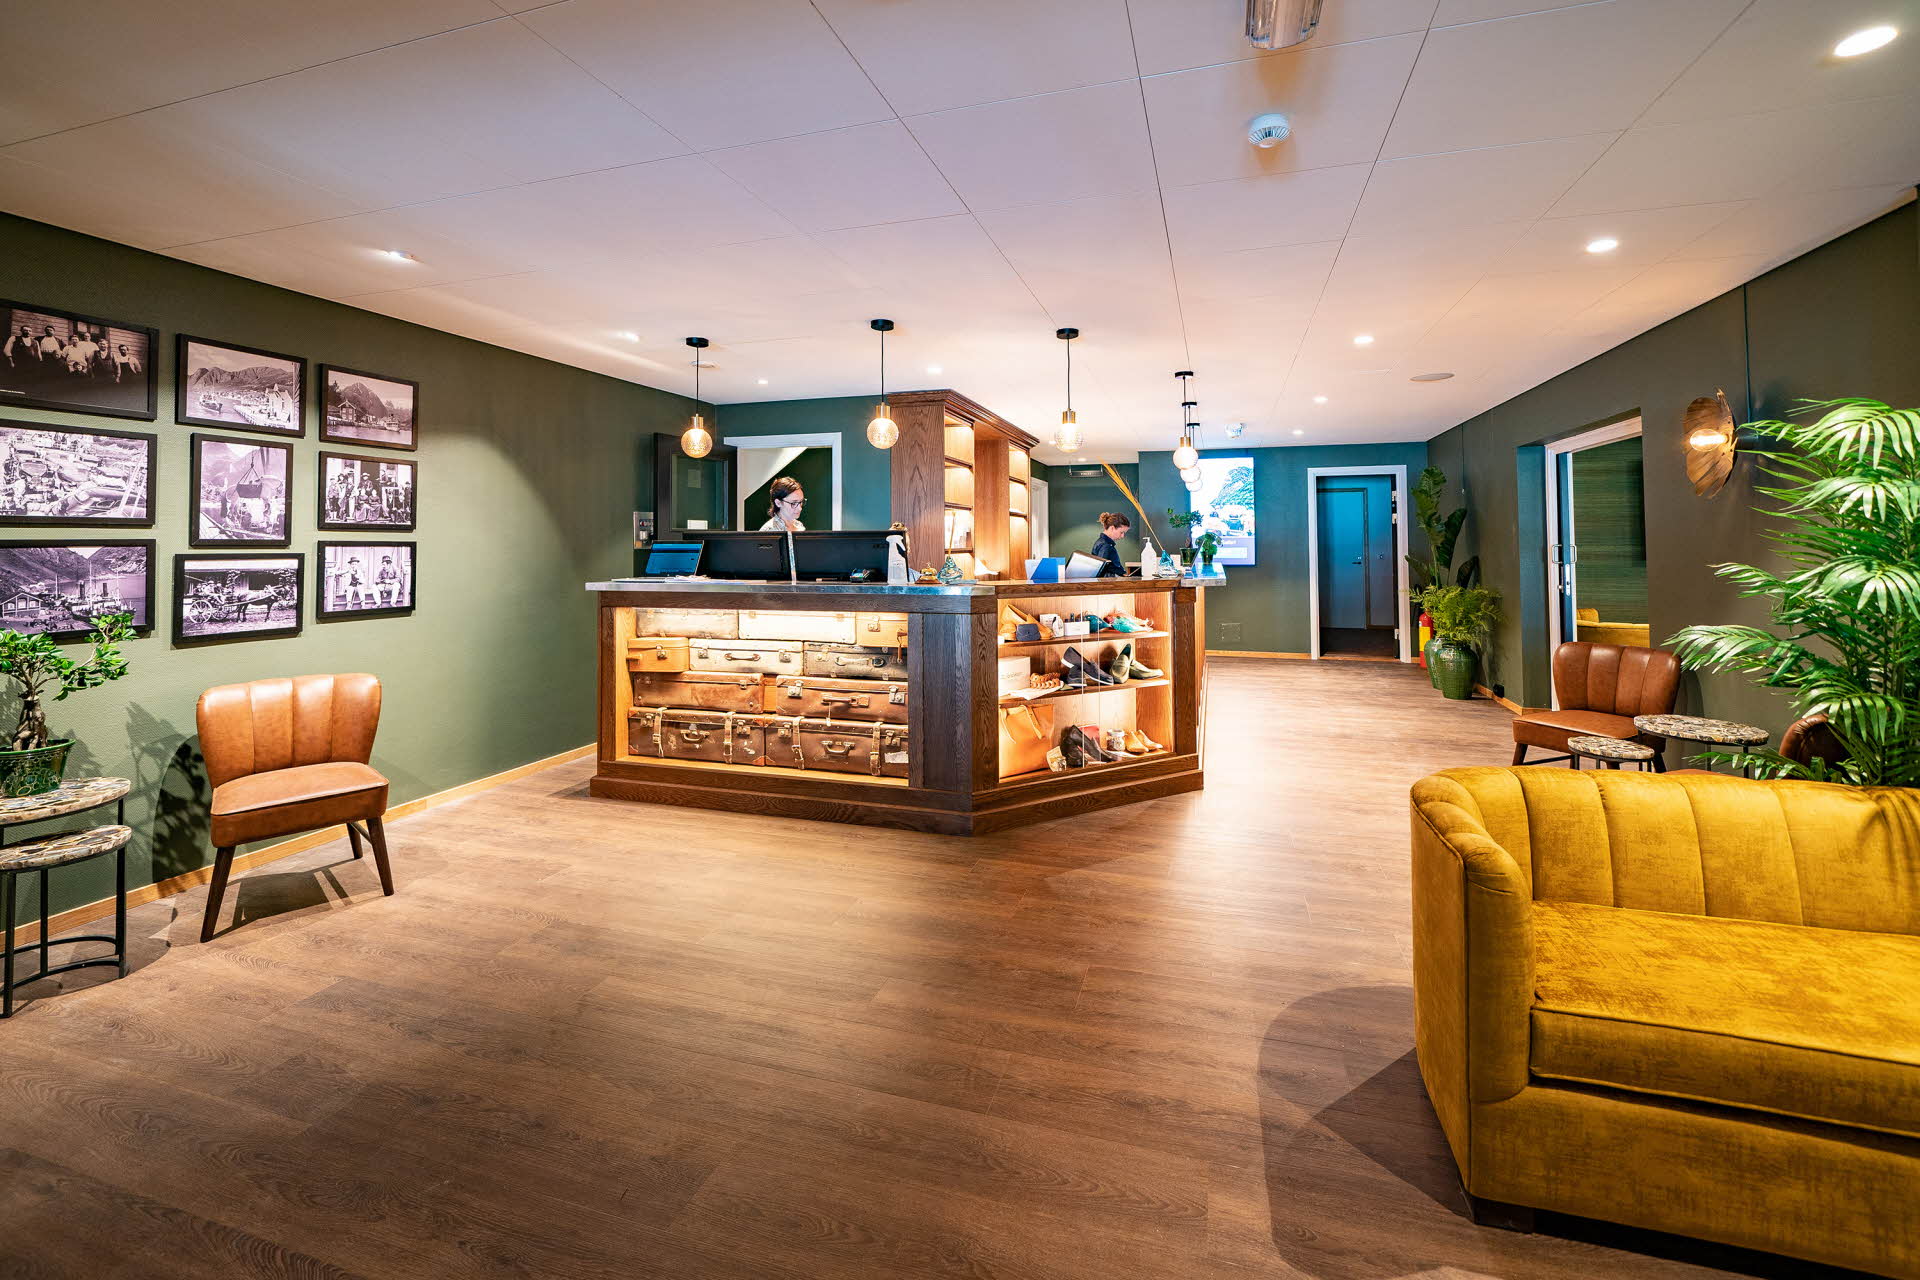 Recepción moderna de estilo escandinavo vintage en el interior del Hotel Aurlandsfjord en tonos verde y marrón.